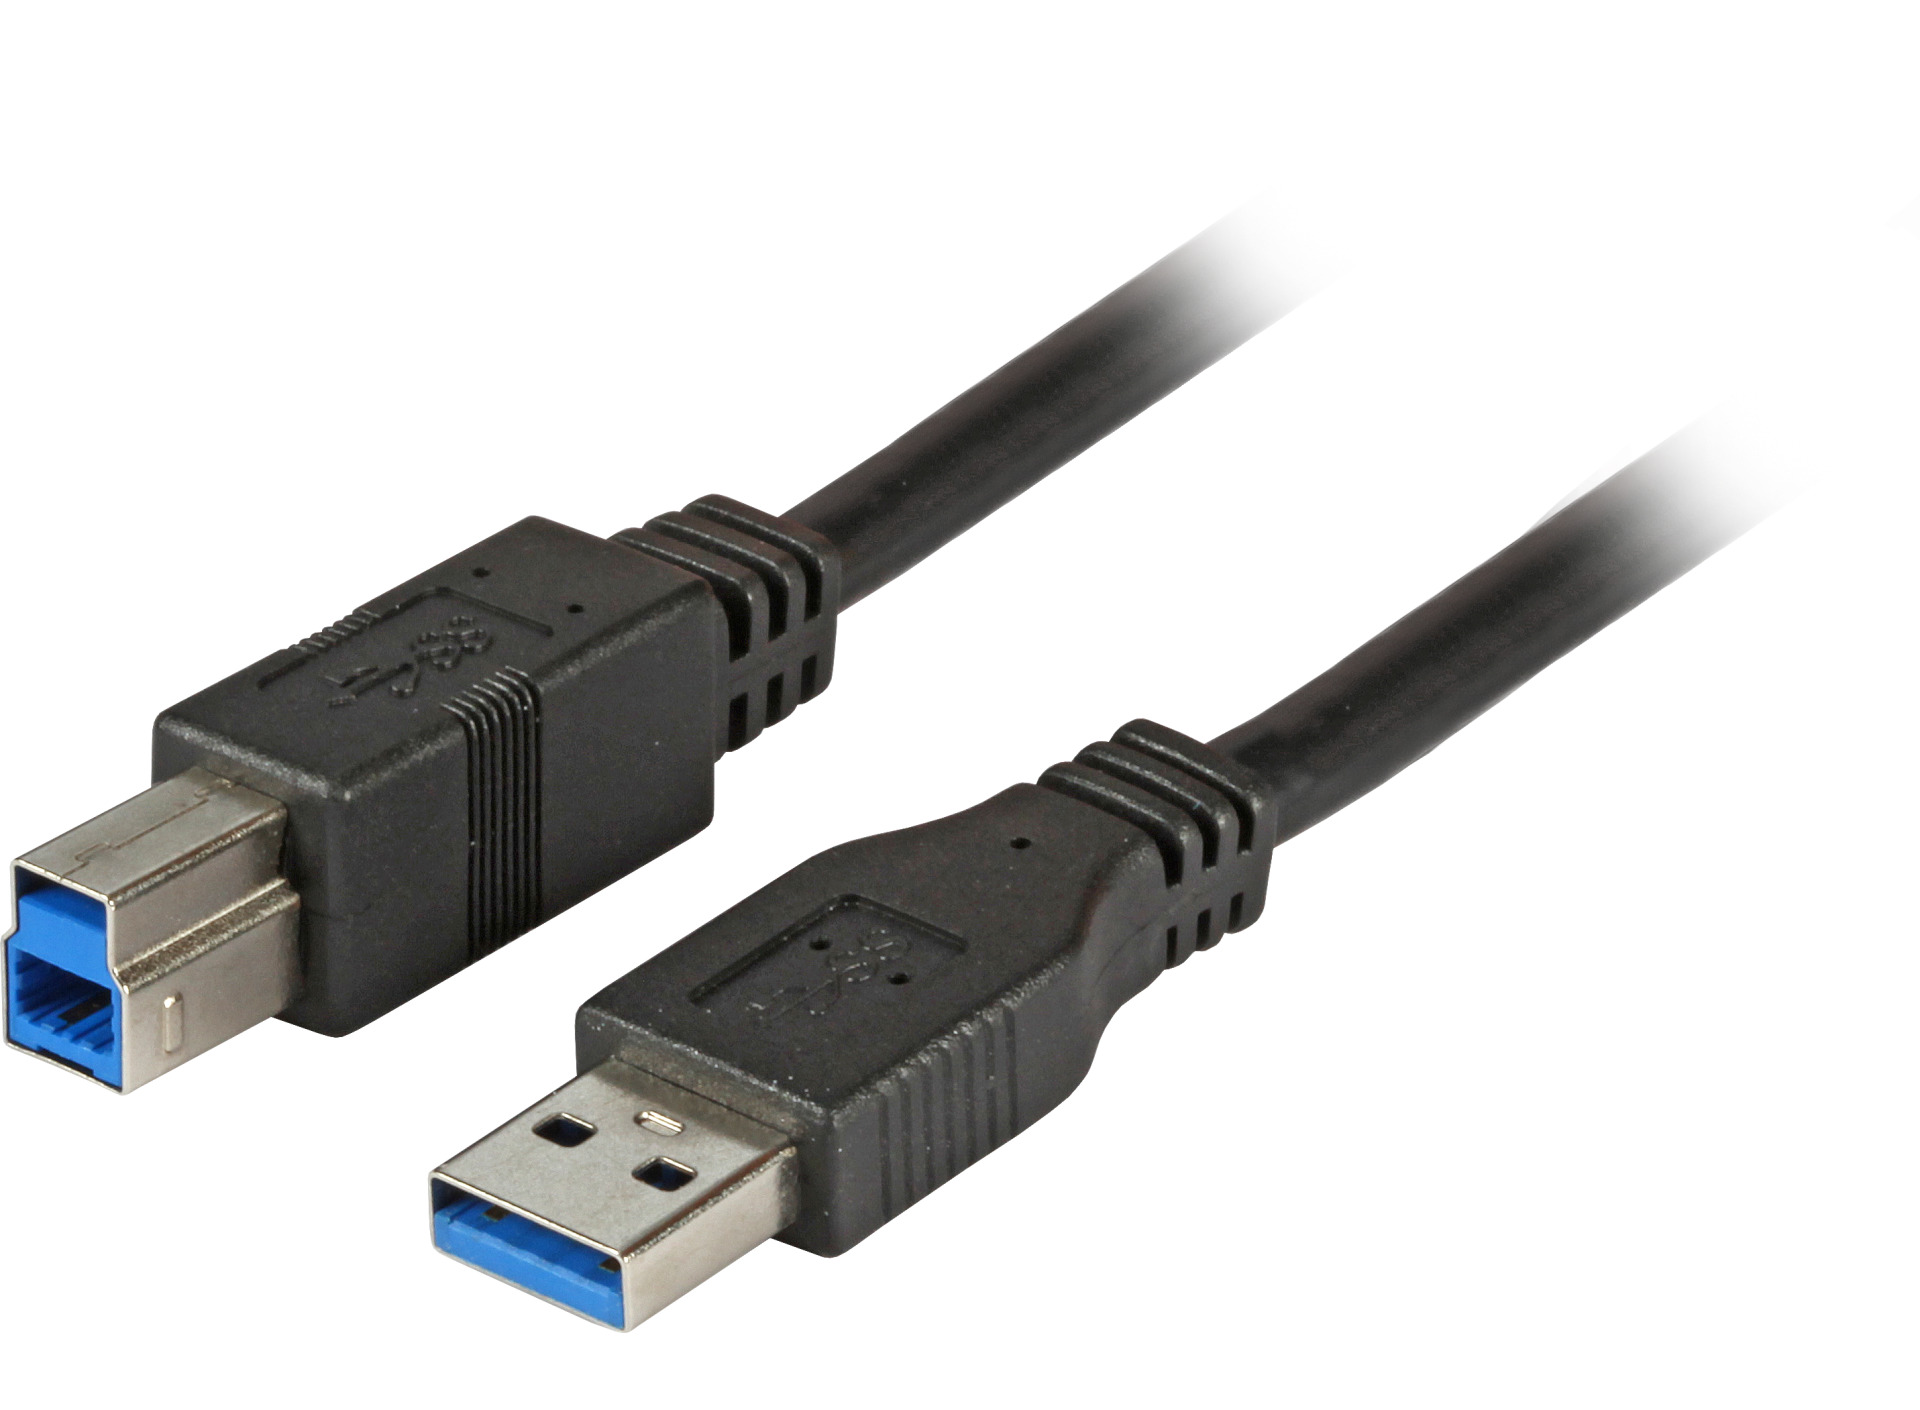 USB3.0 Connection Cable A-B, M-M, 3.0m, black, Classic